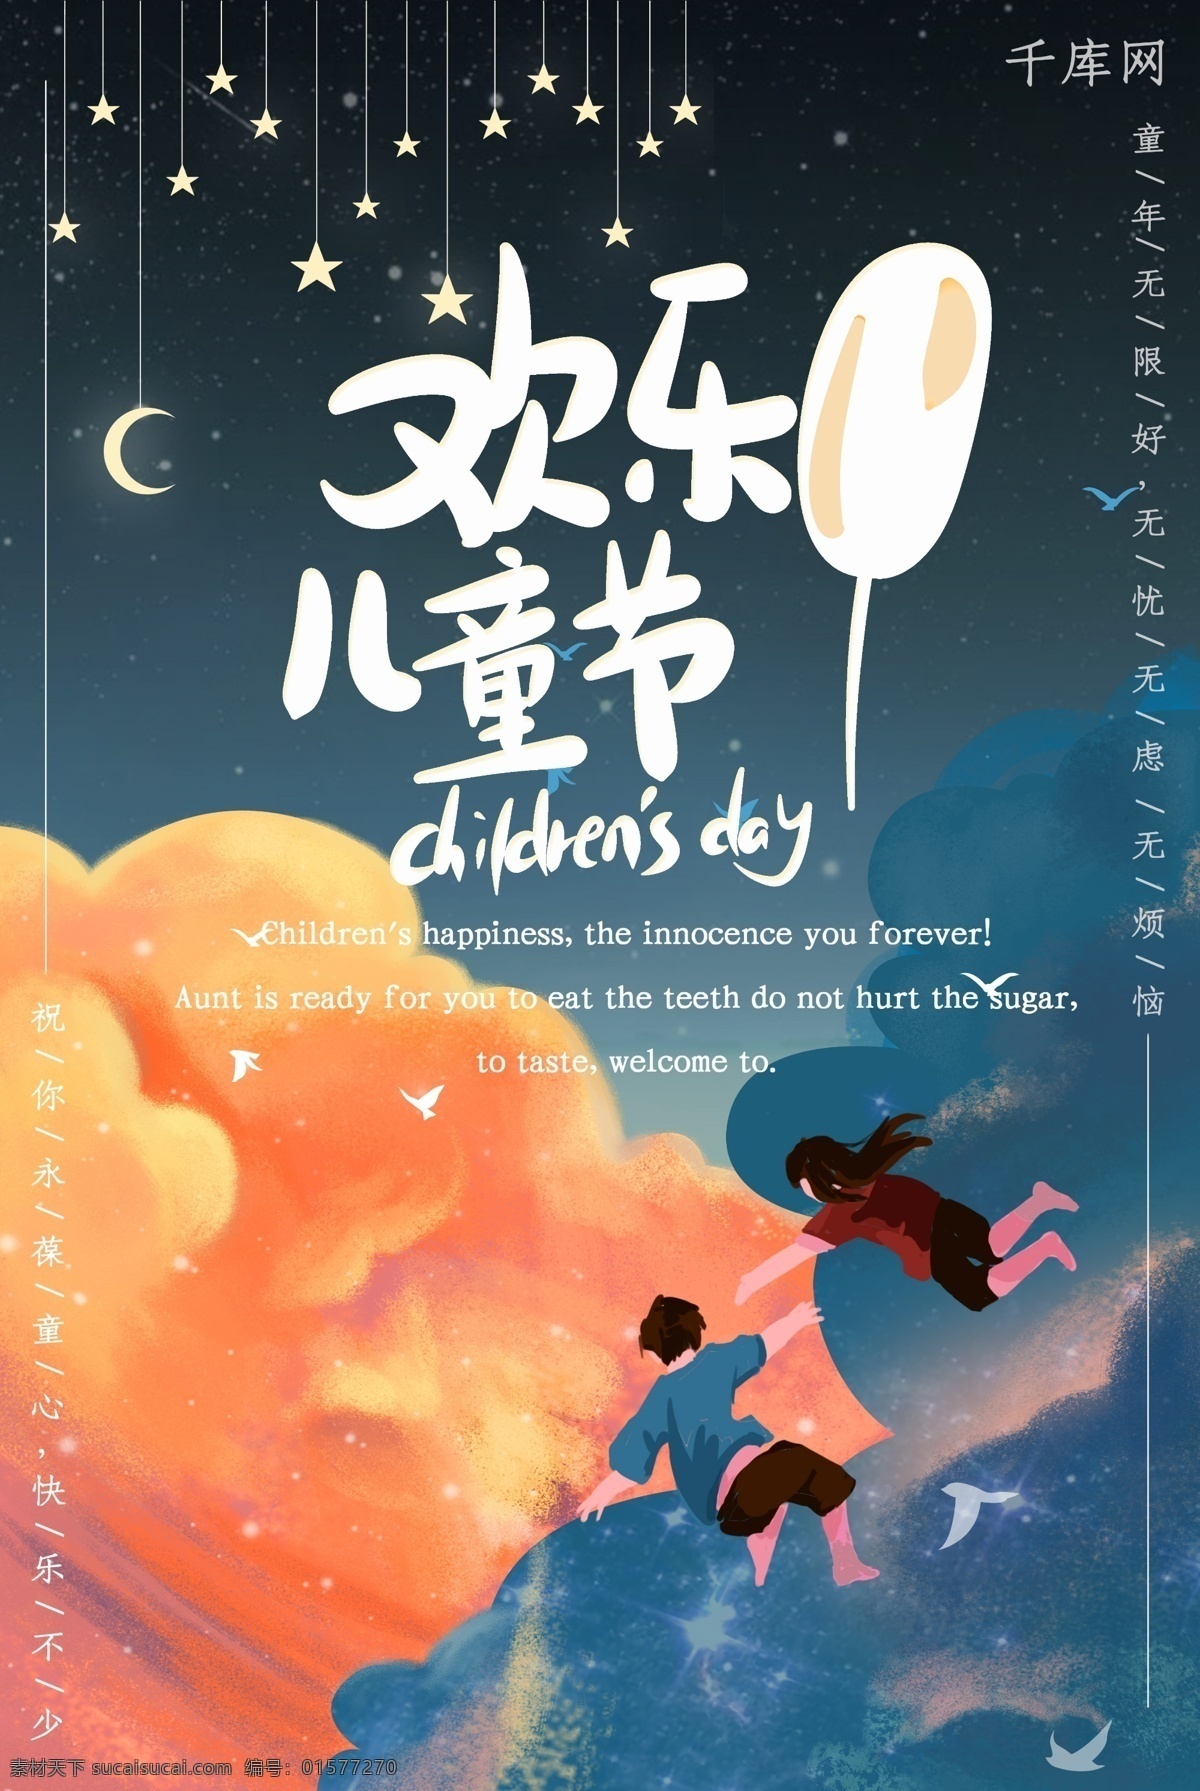 儿童节海报 橙色 蓝色 梦幻欢乐 飞翔儿 童节海报 卡通 热点图